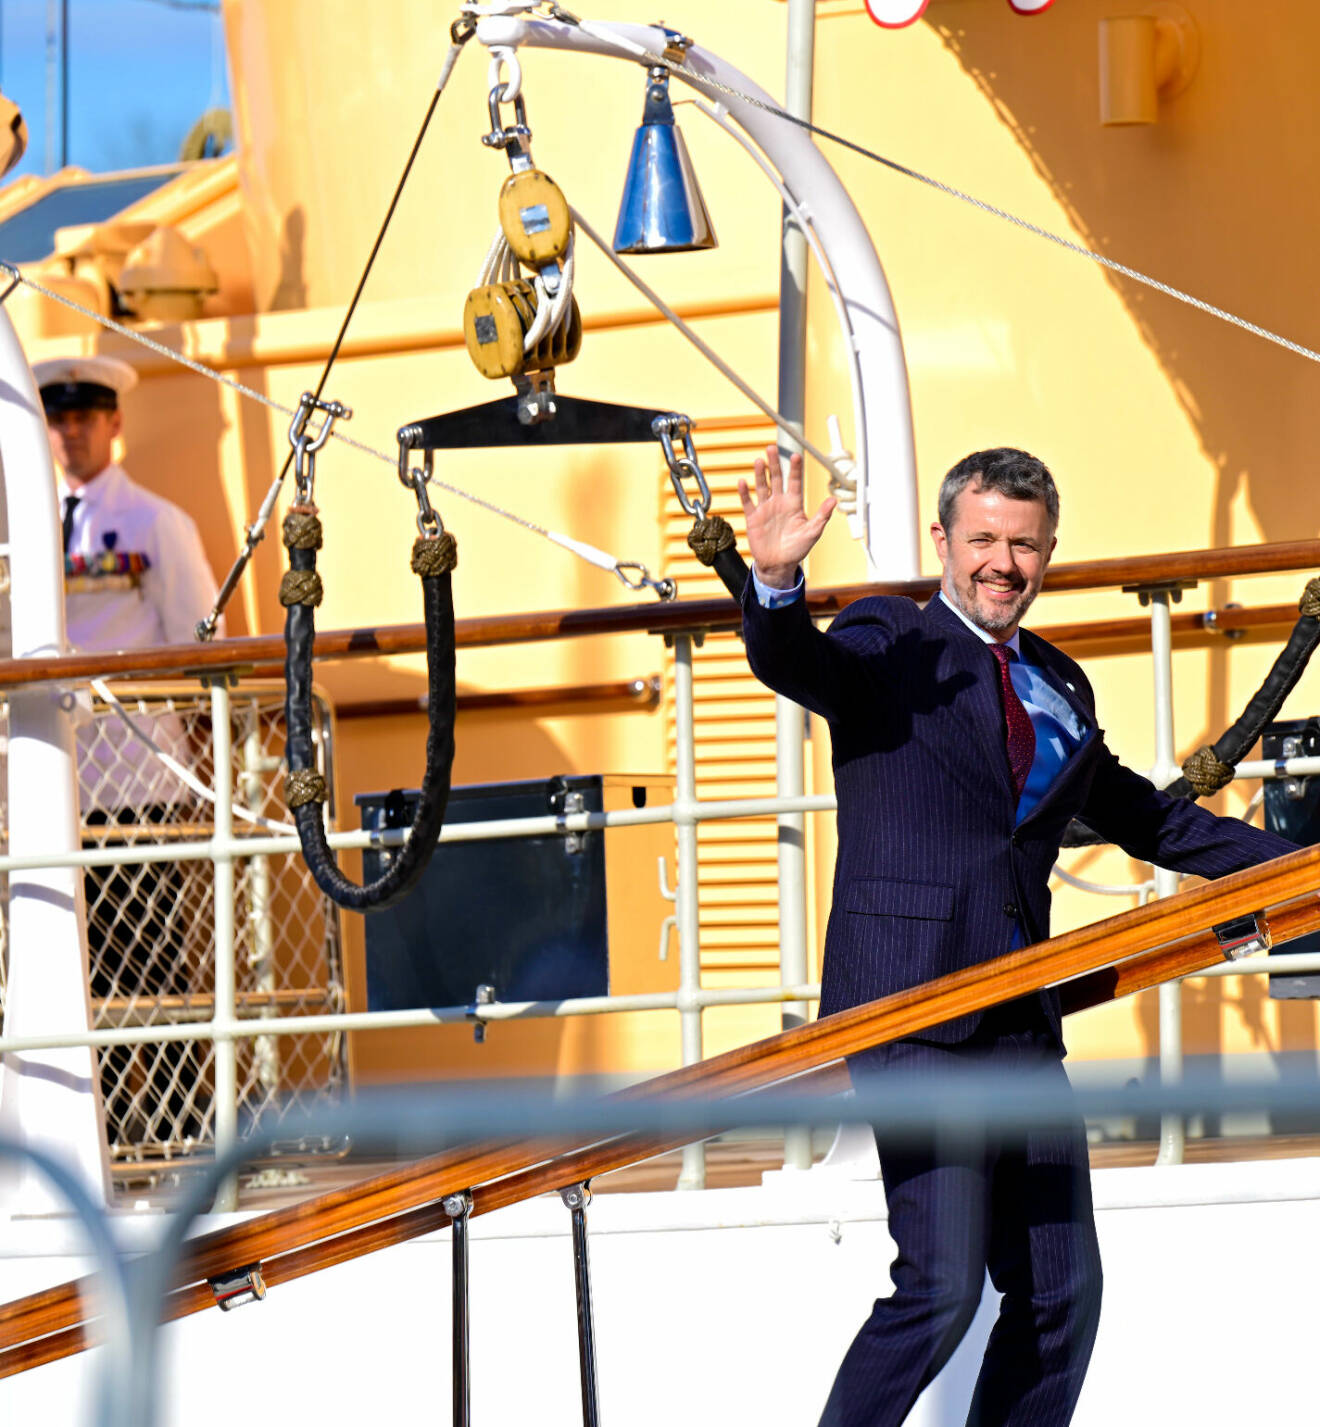 Statsbesök från Danmark – kung Frederik går ombord på Dannebrog inför svarsmottagningen